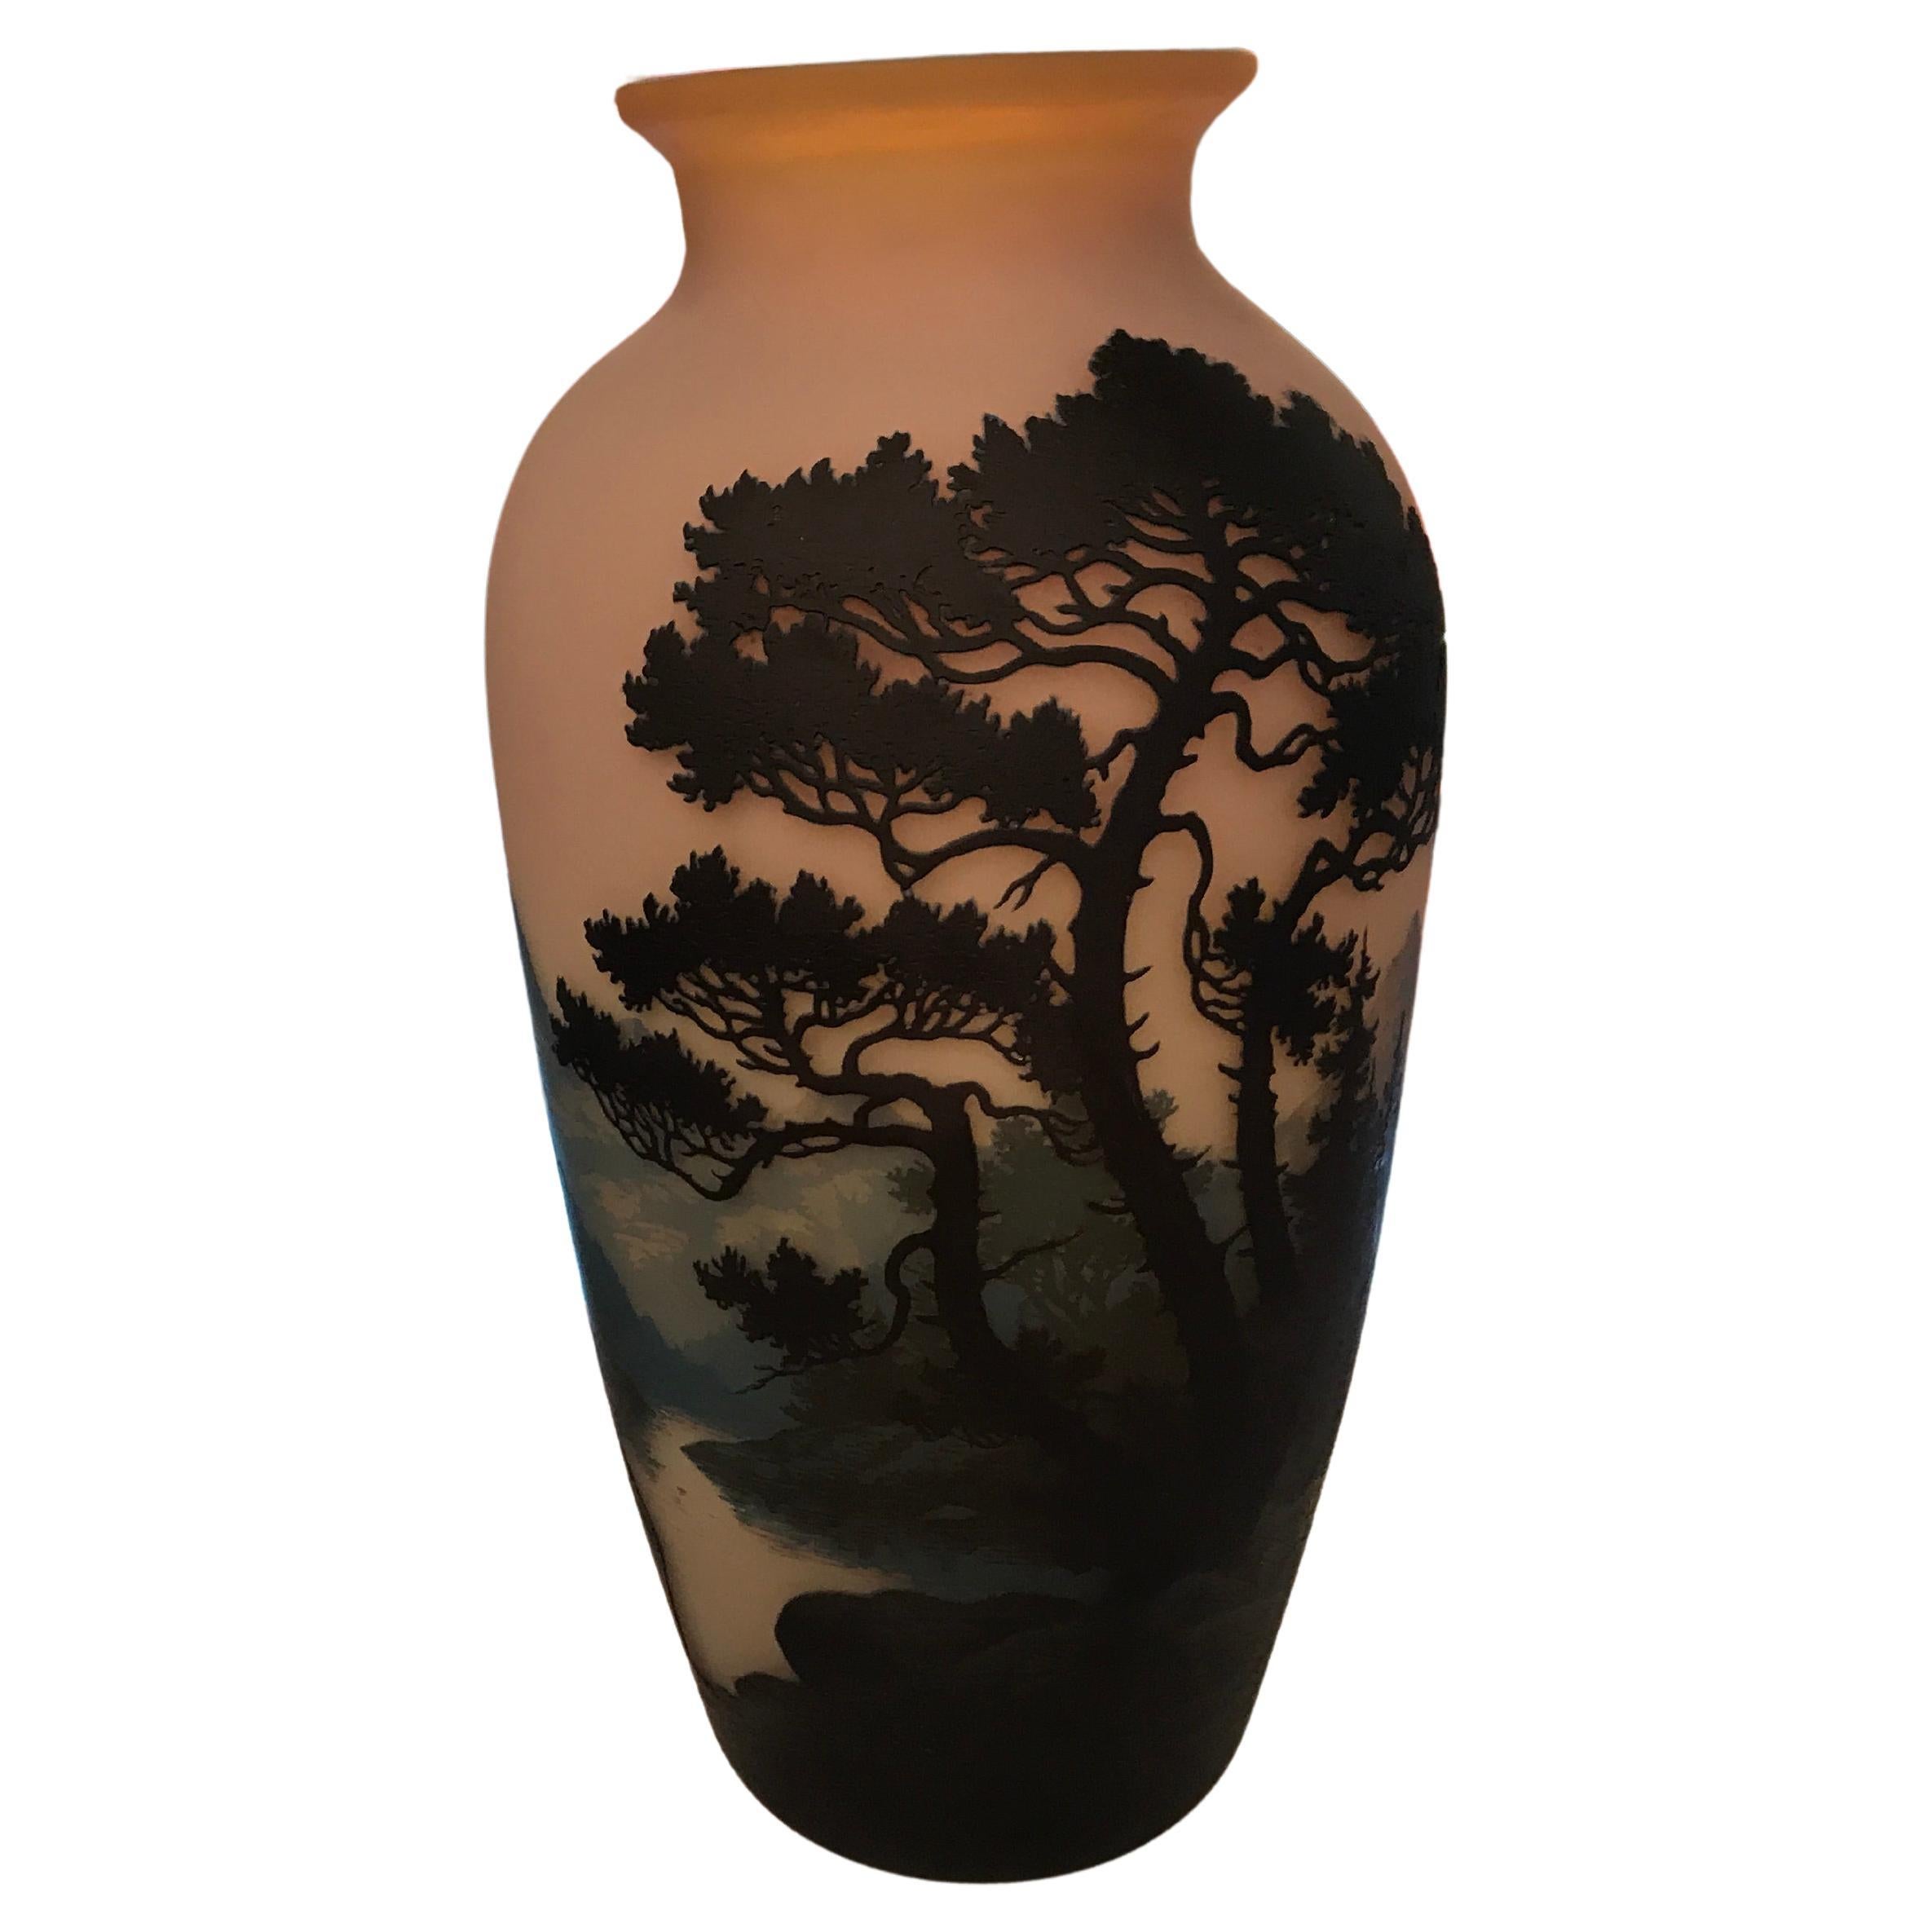 Monumental Vase, Sign: Muller Fres Luneville, Jugendstil, Art Nouveau, liberty